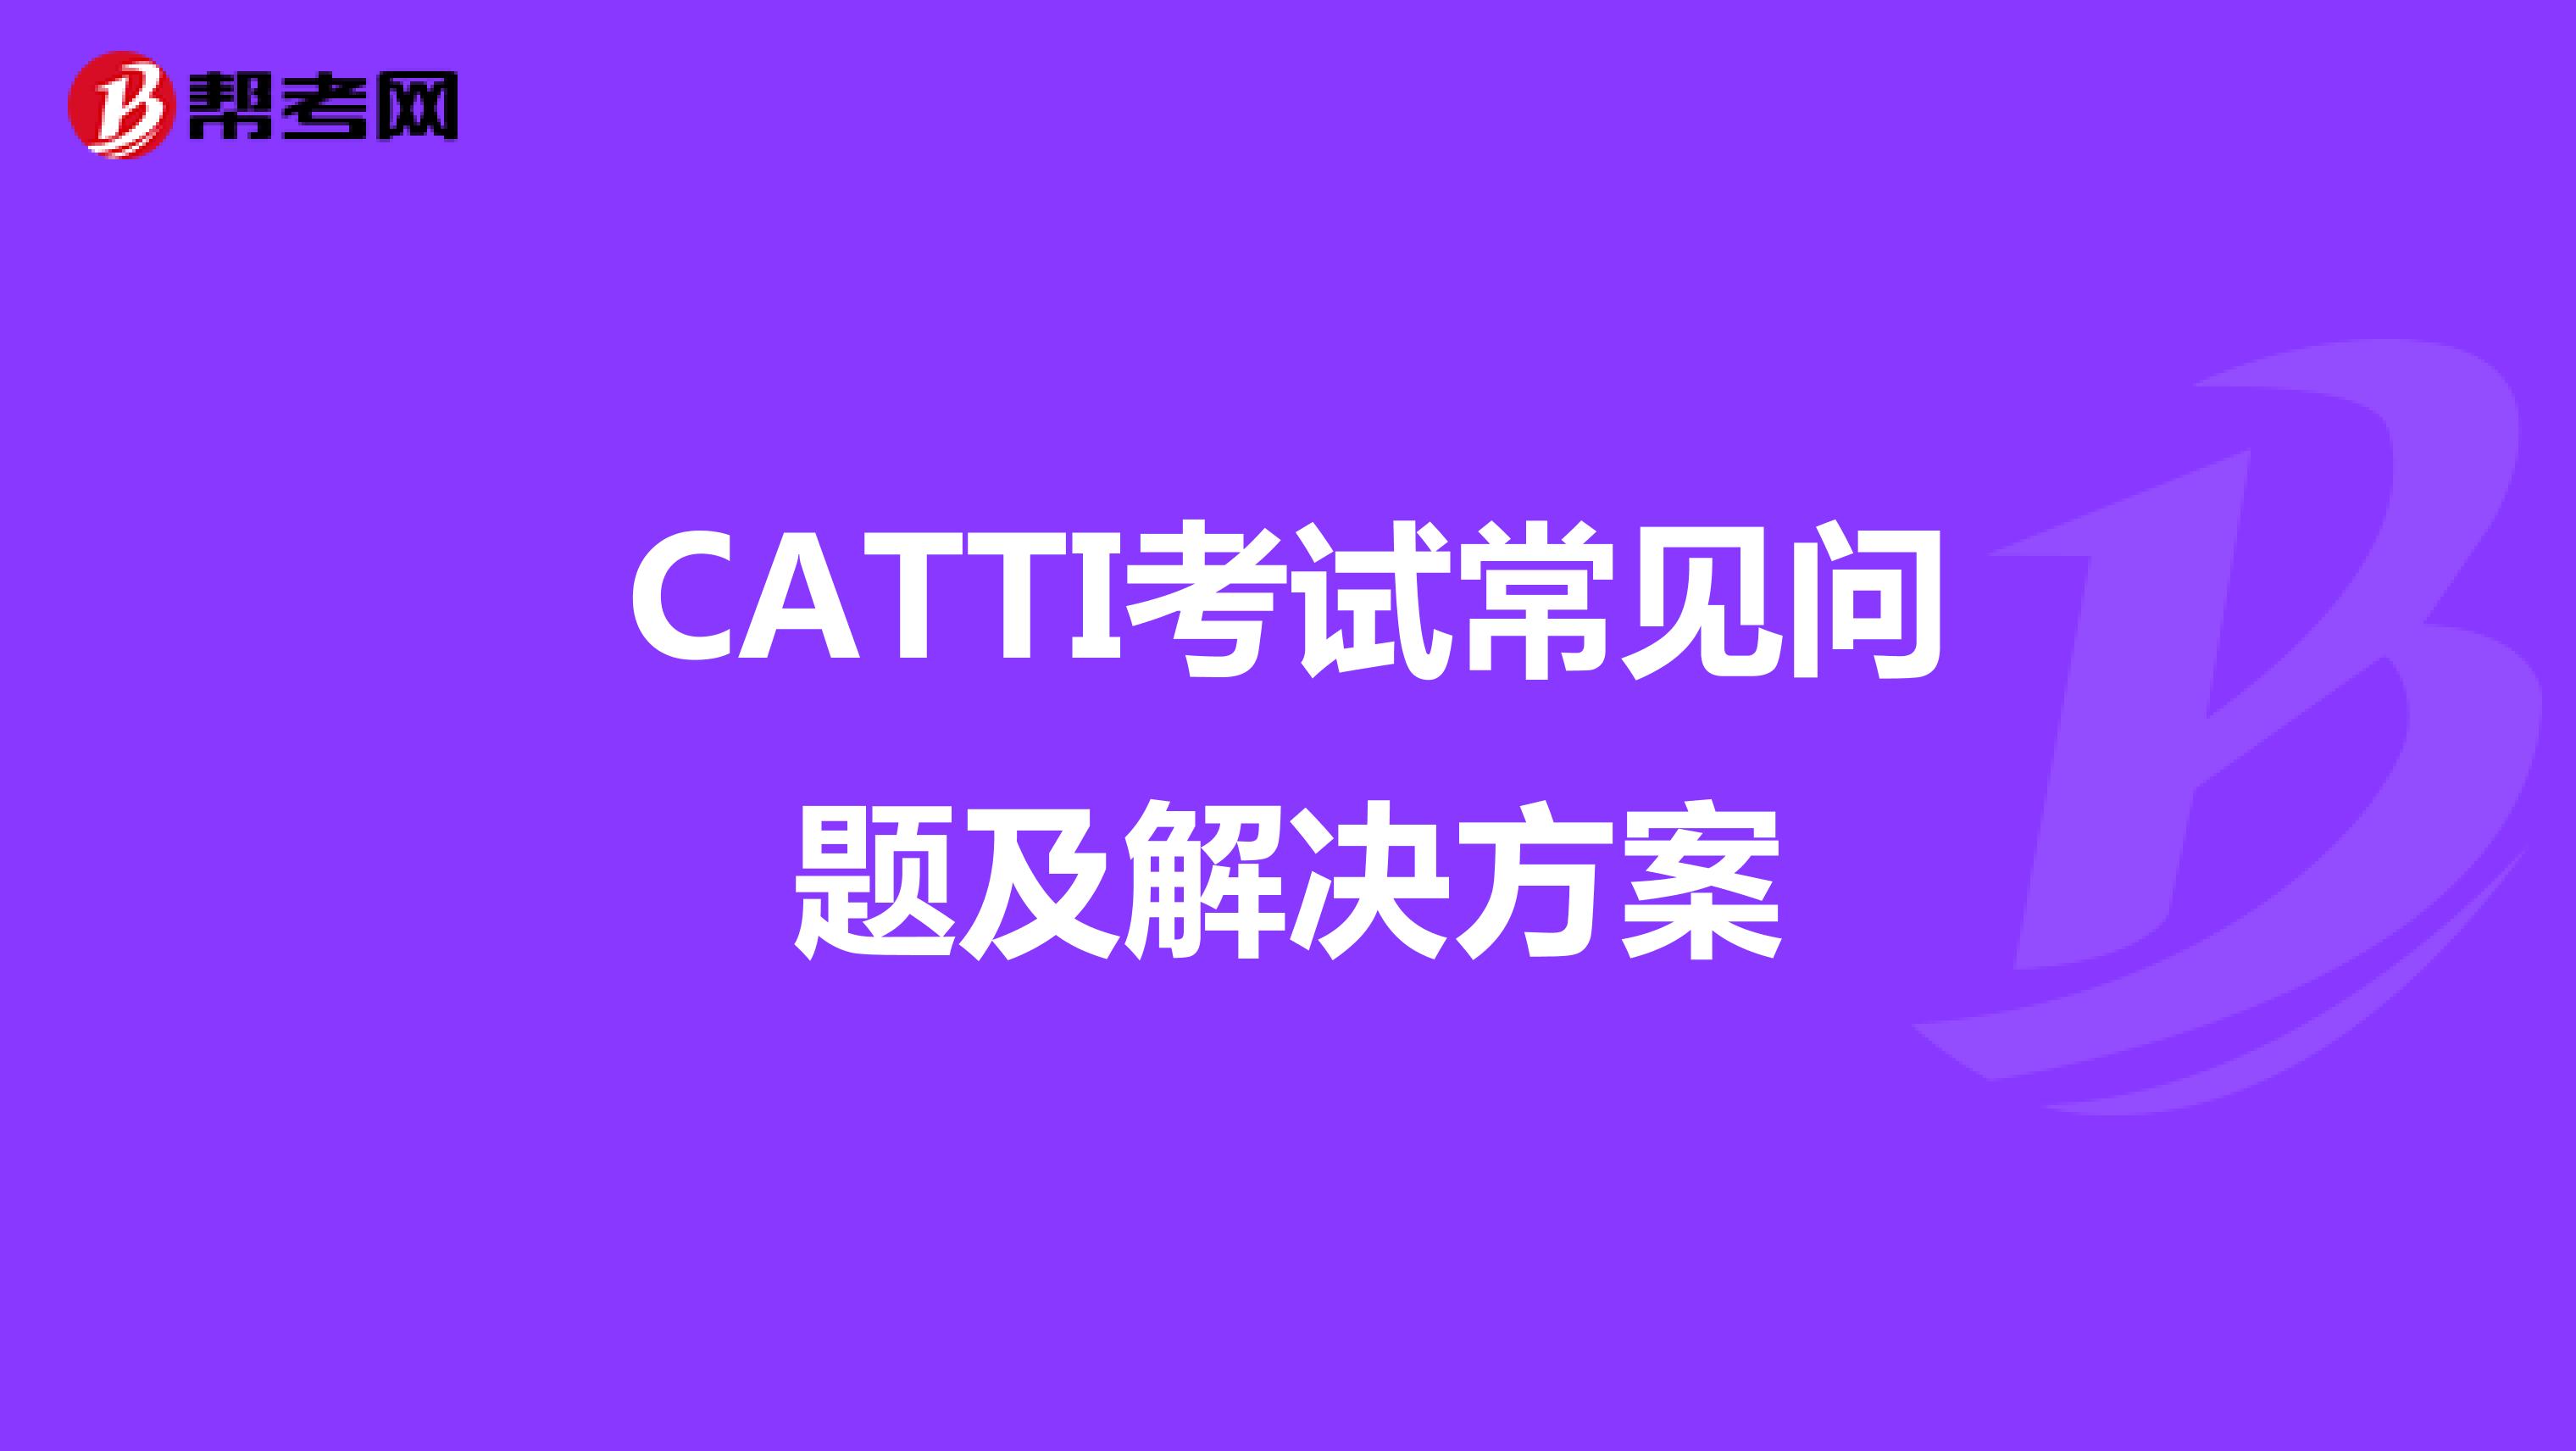 CATTI考试常见问题及解决方案